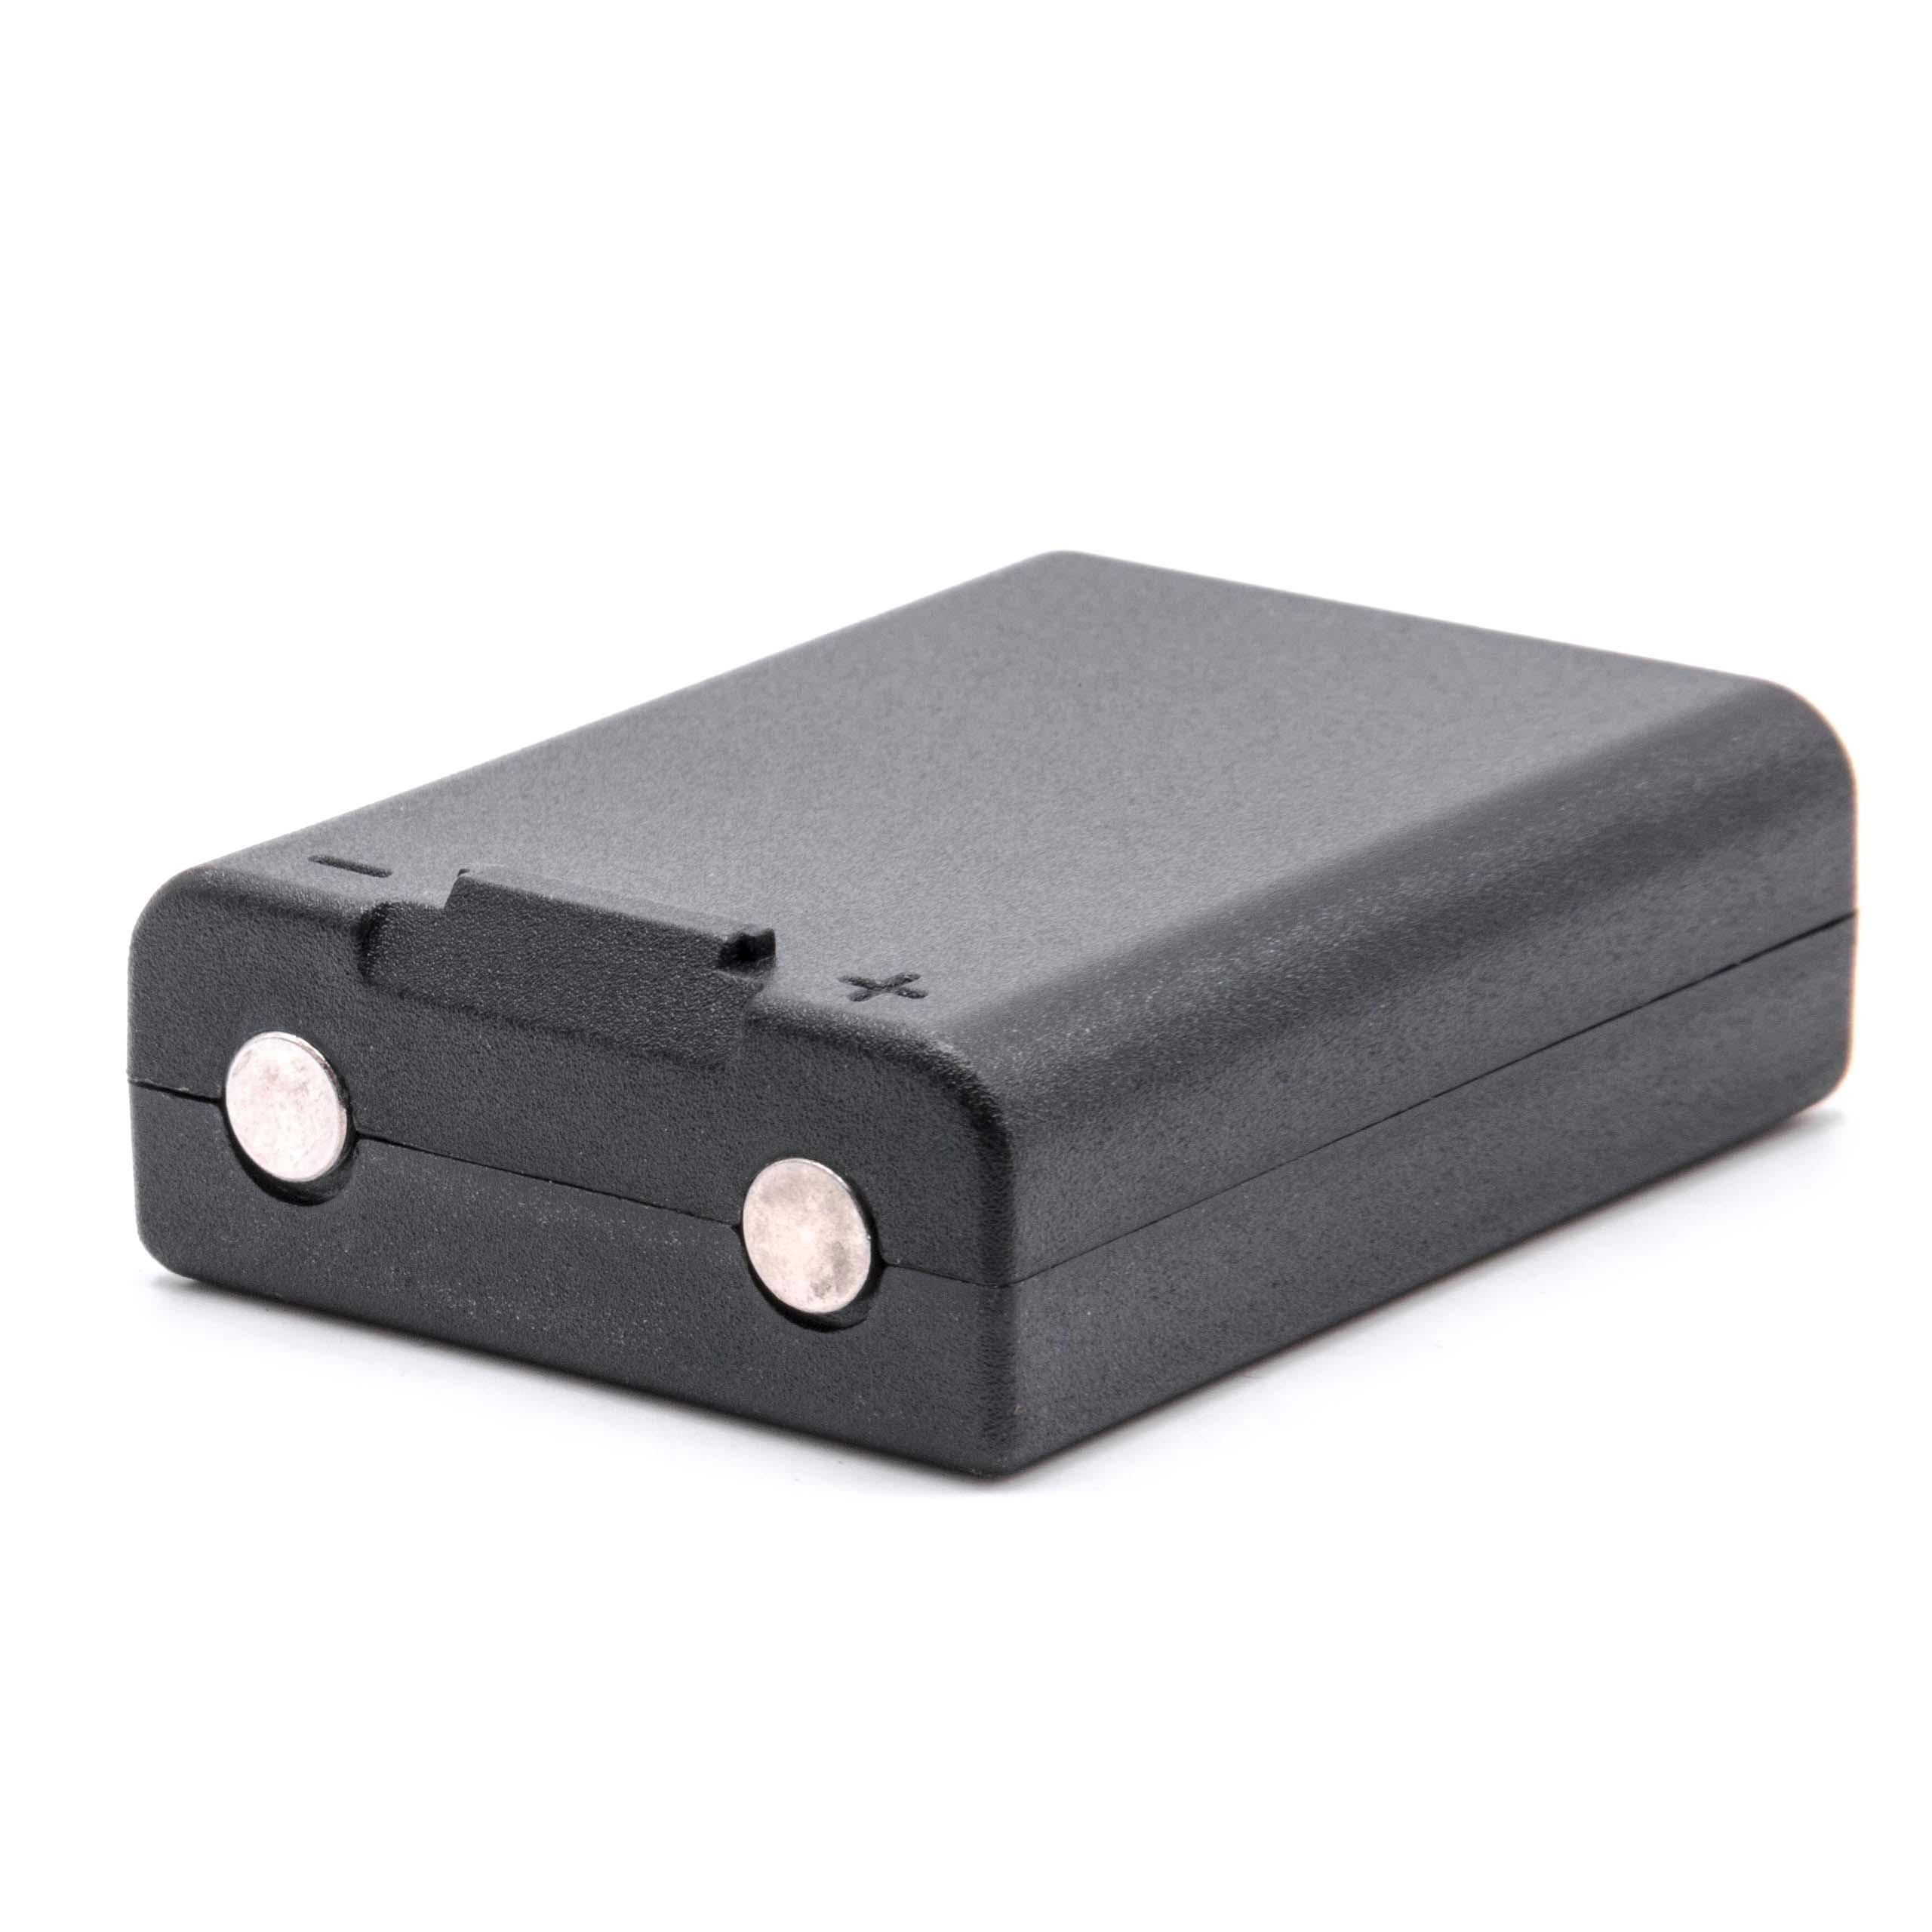 Batteria per telecomando remote controller sostituisce Ravioli NH650 Ravioli - 700mAh 3,6V NiMH